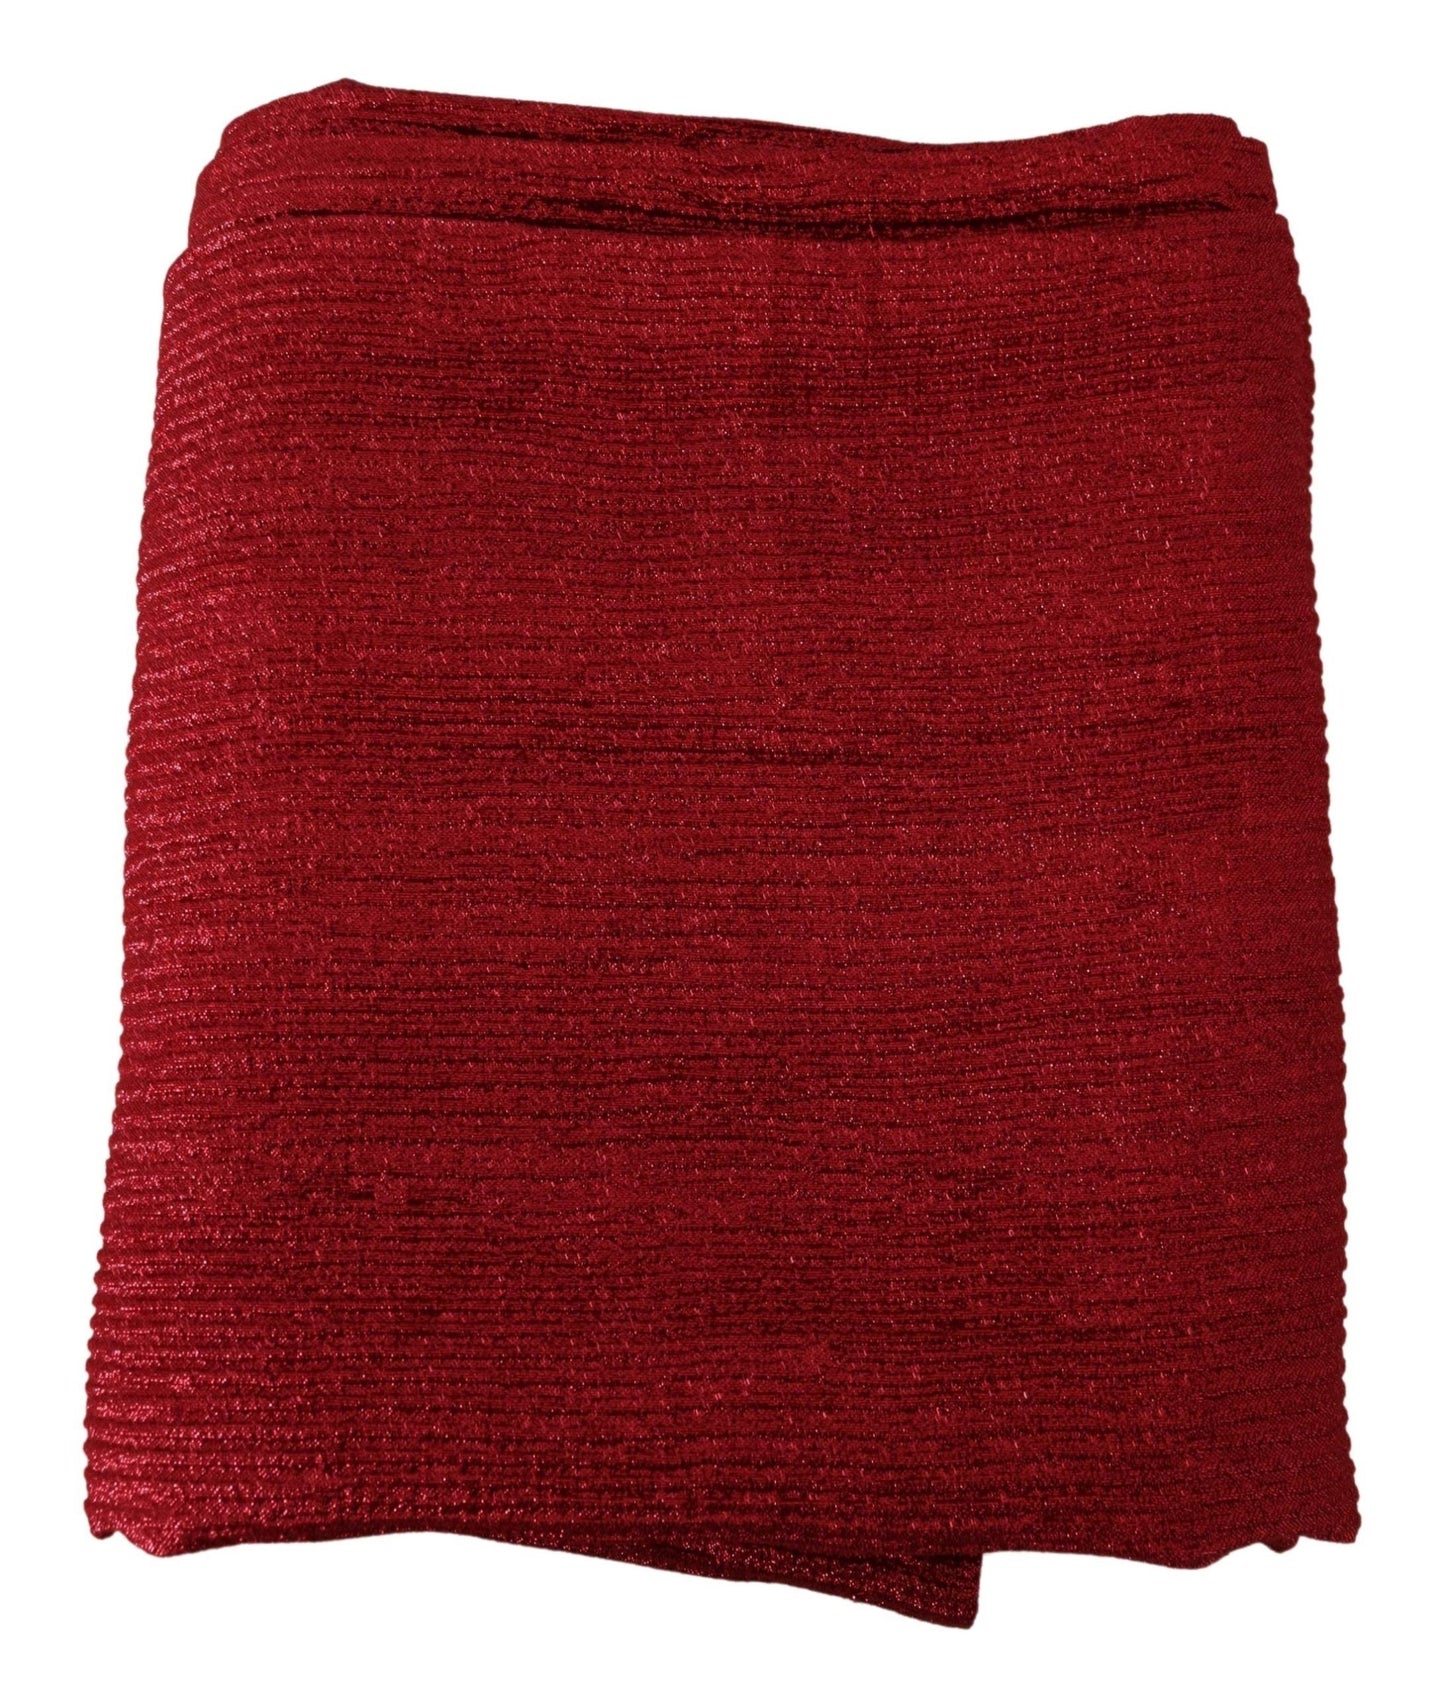 Metallic Red Wool Blend Shawl Wrap Scarf